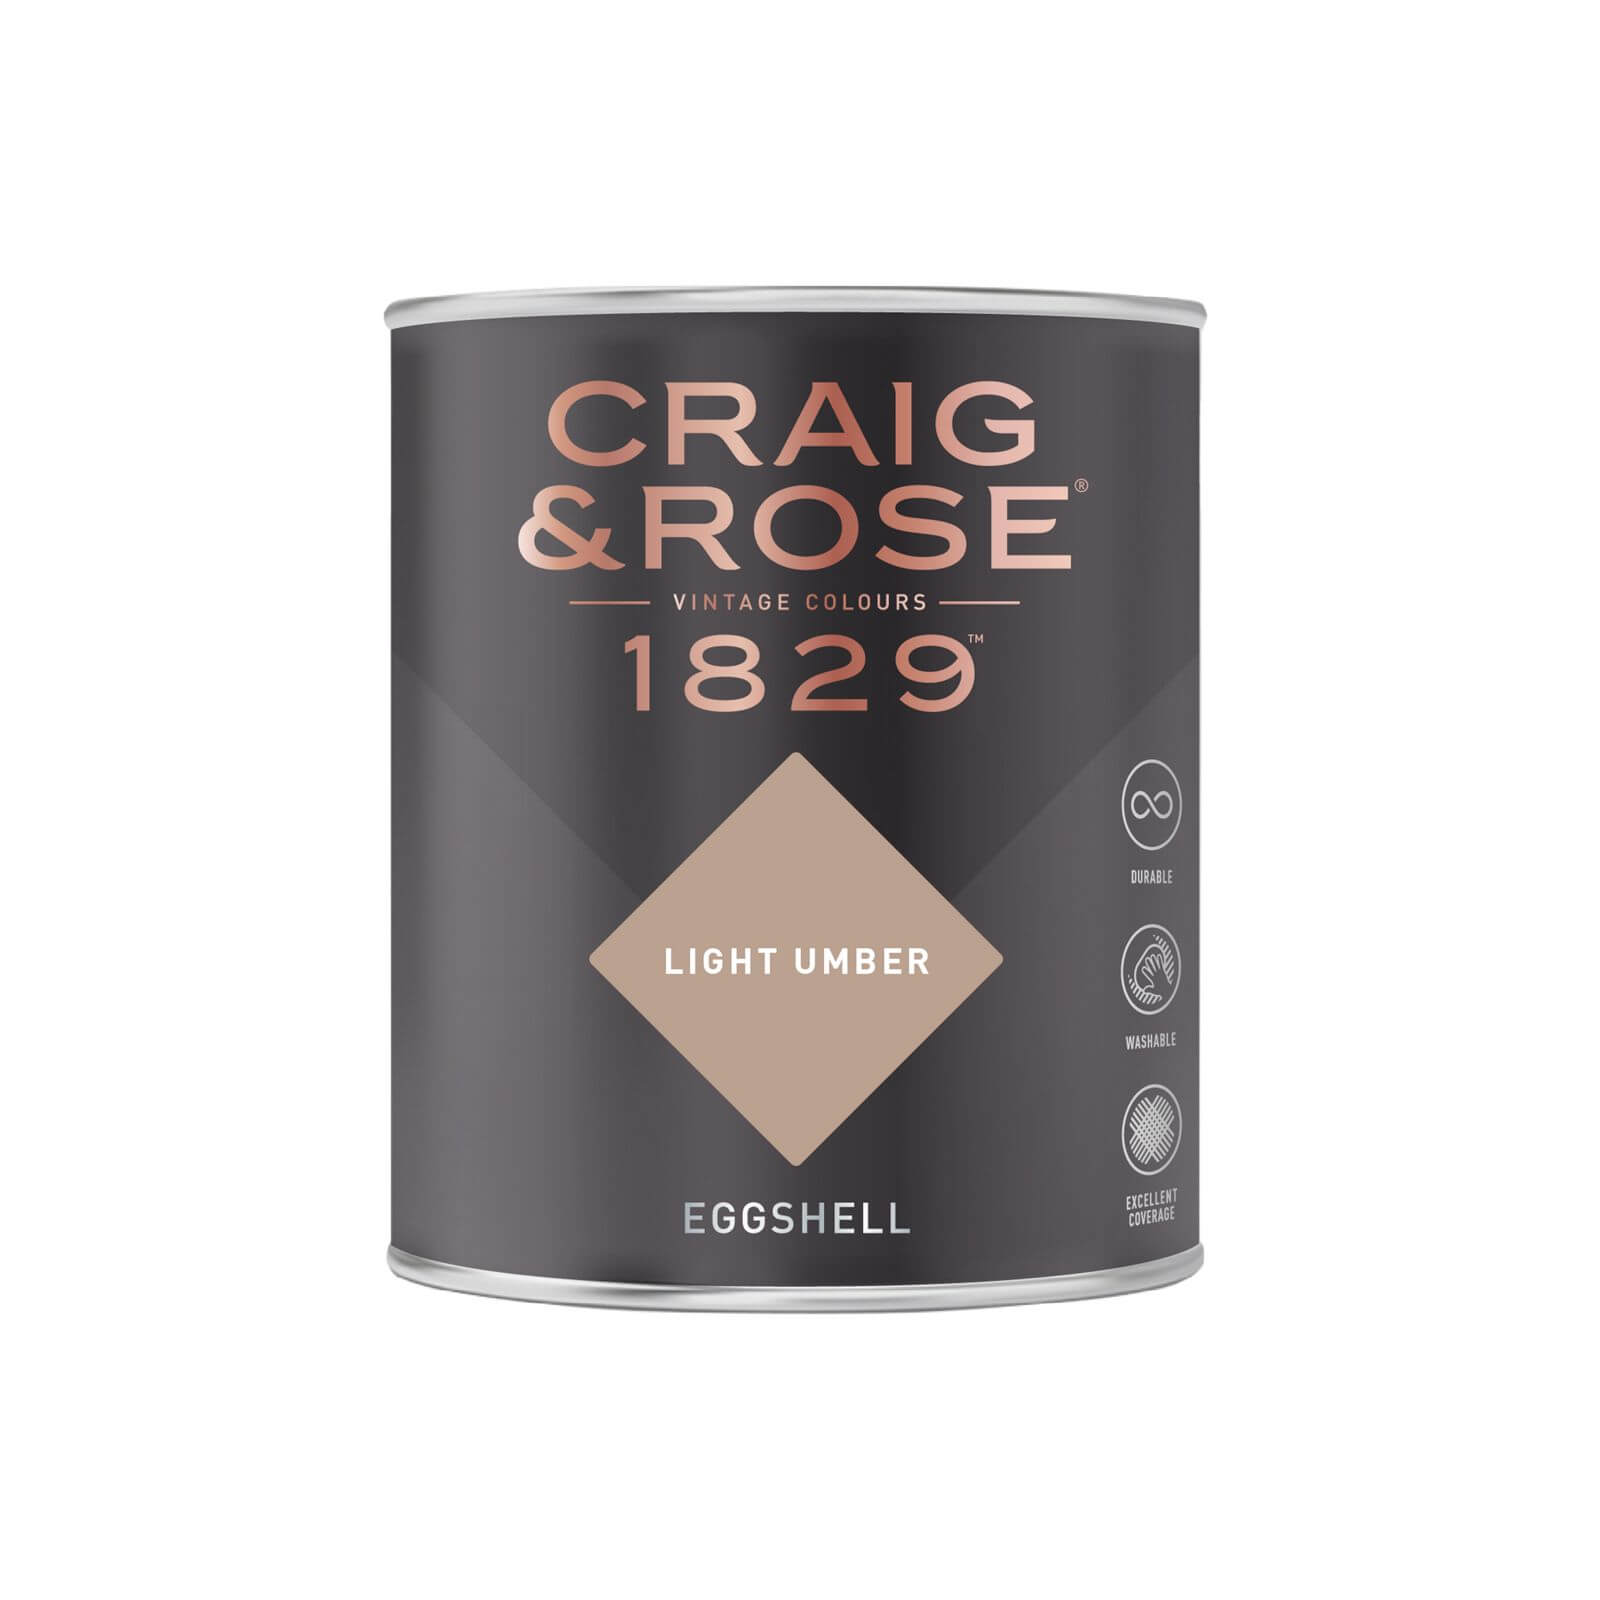 Craig & Rose 1829 Eggshell Paint Light Umber - 750ml